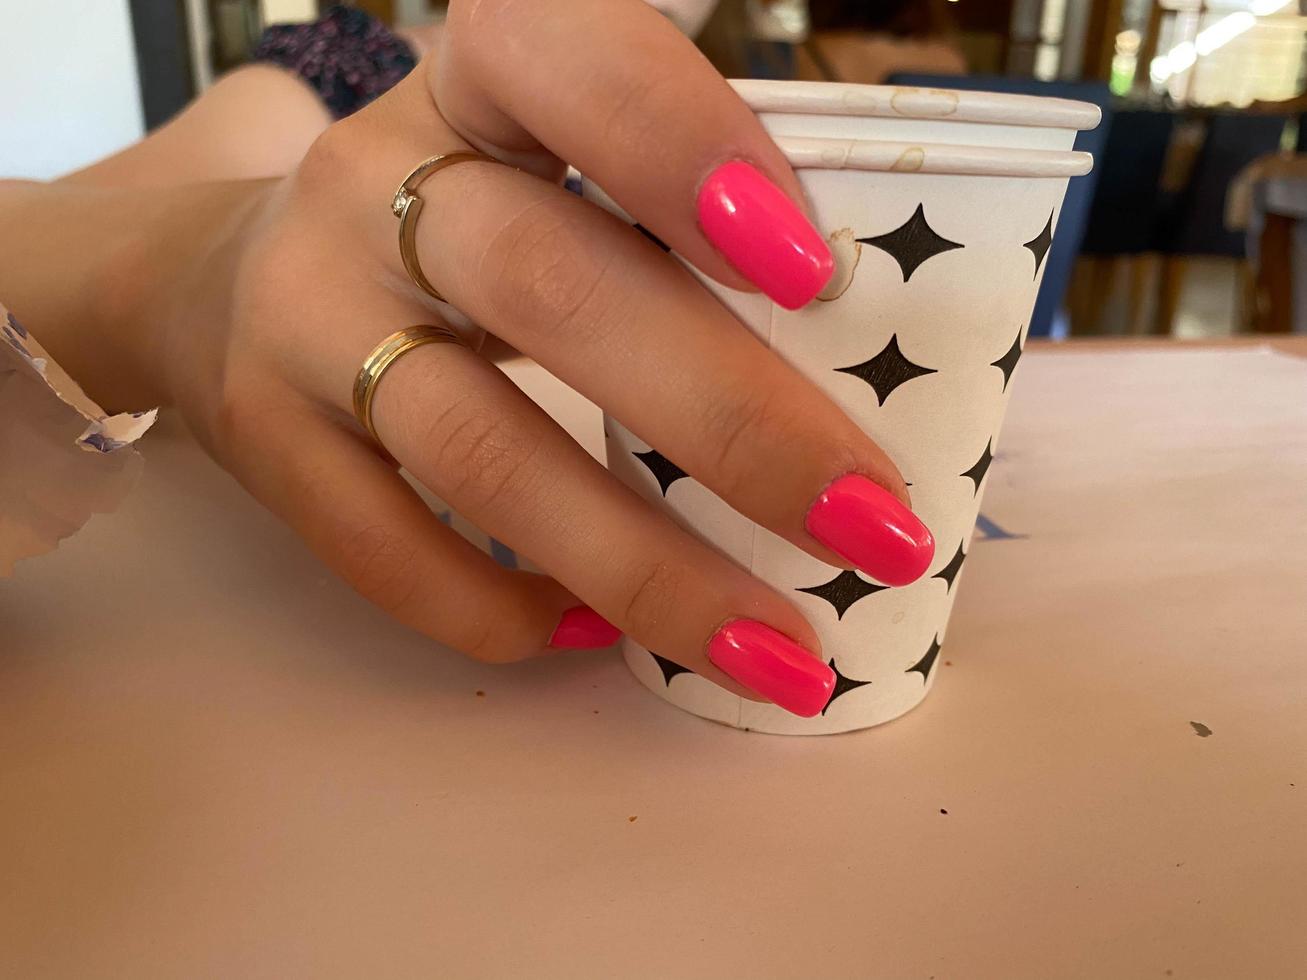 xícara de café nas mãos de uma mulher com manicure vermelha brilhante foto